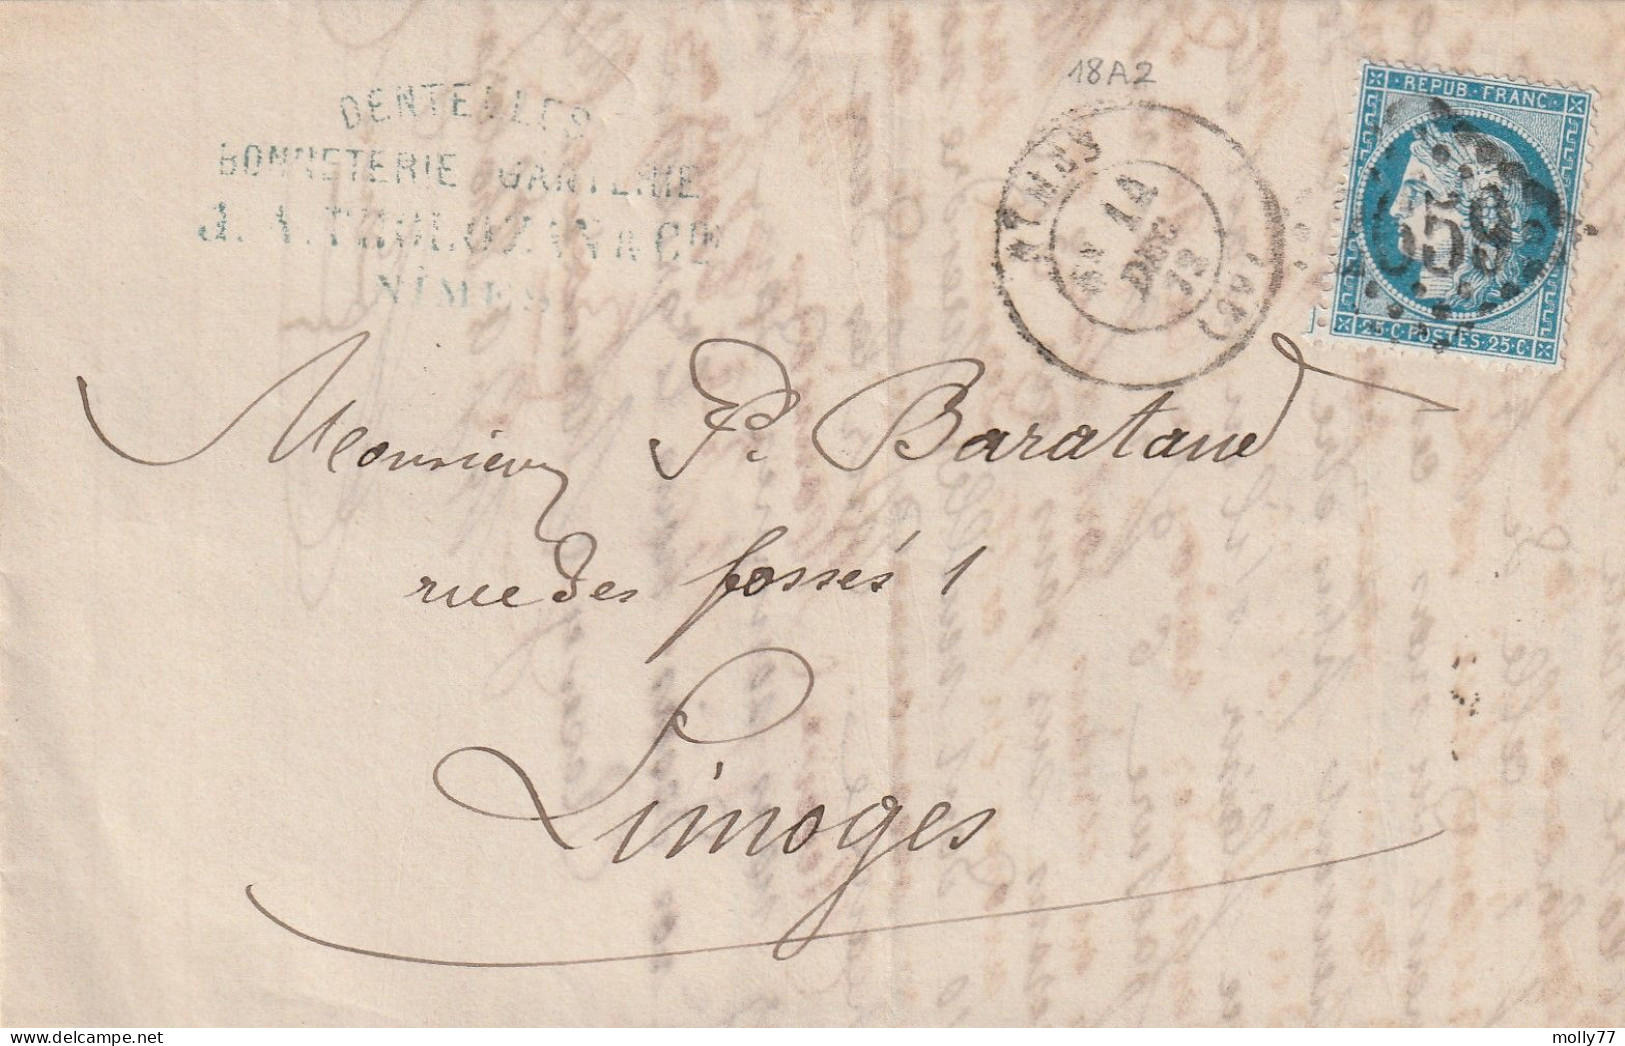 Lettre De Nîmes à Limoges LAC - 1849-1876: Période Classique